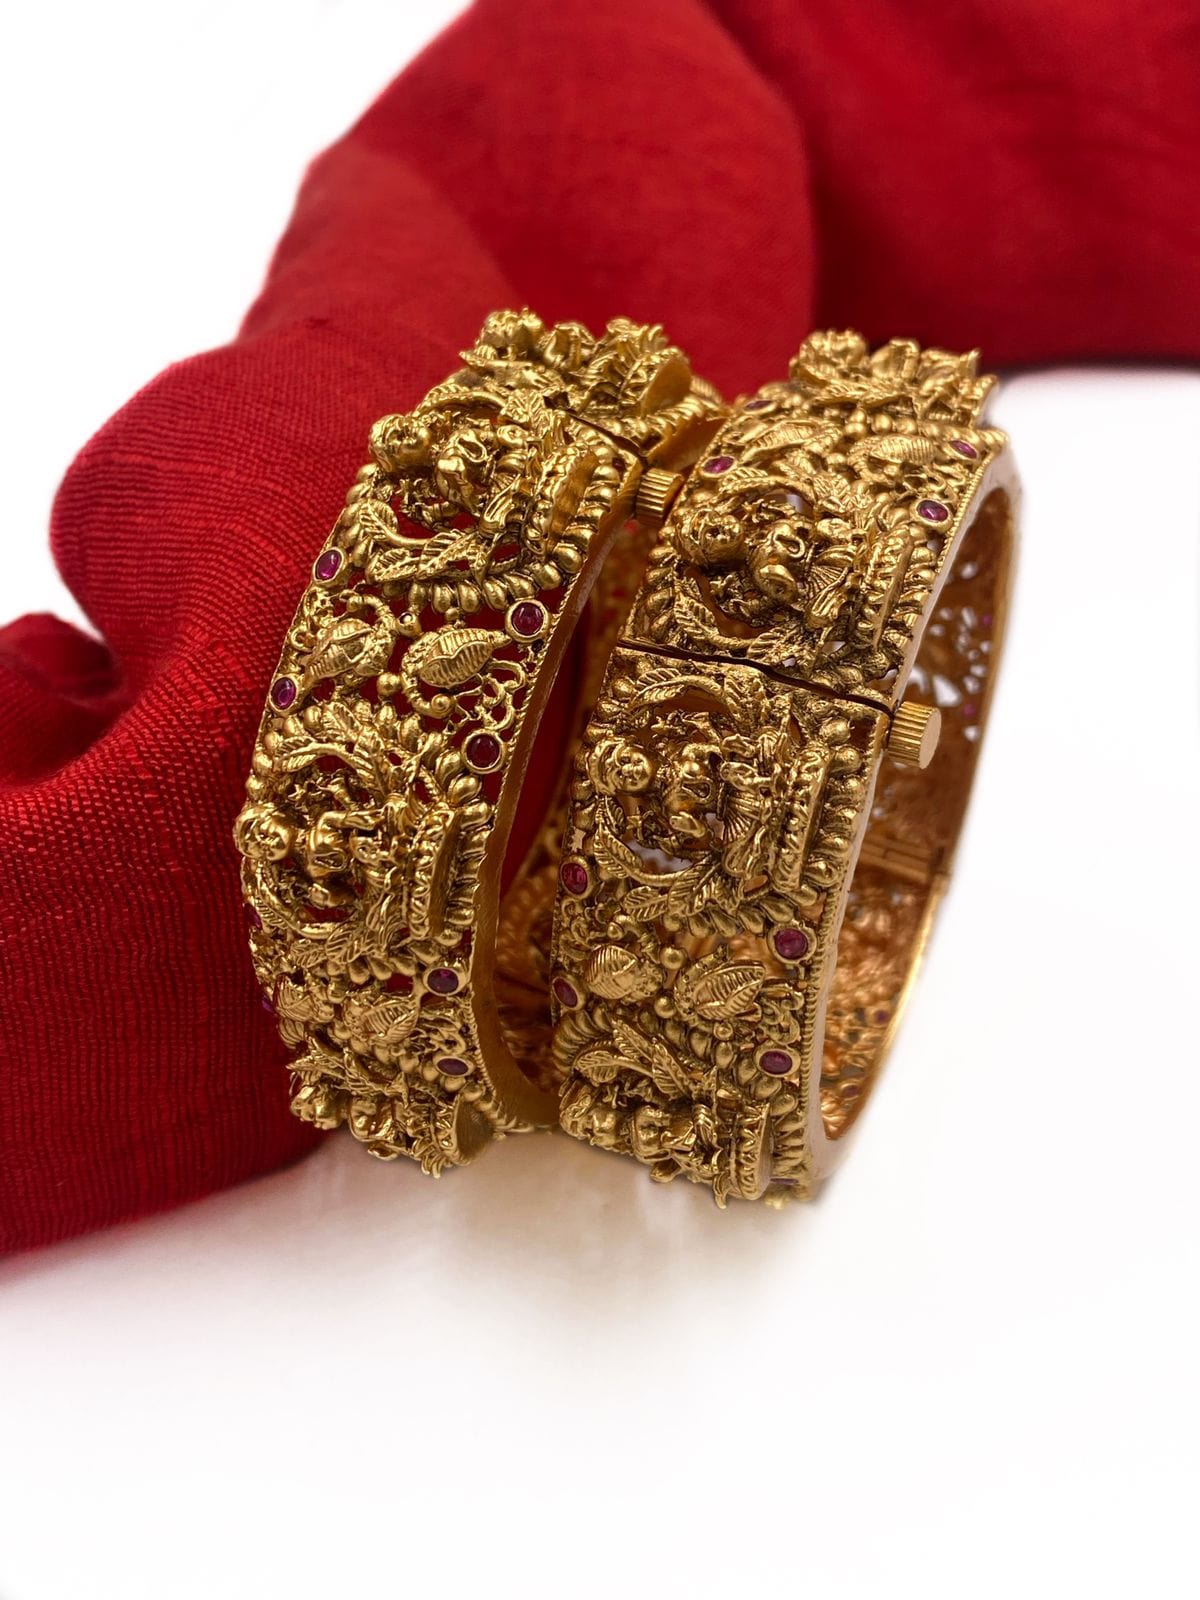 Gold Plated Antique Goddess Lakshmi Temple Design Bangles By Gehna Shop. Antique Golden Bangles